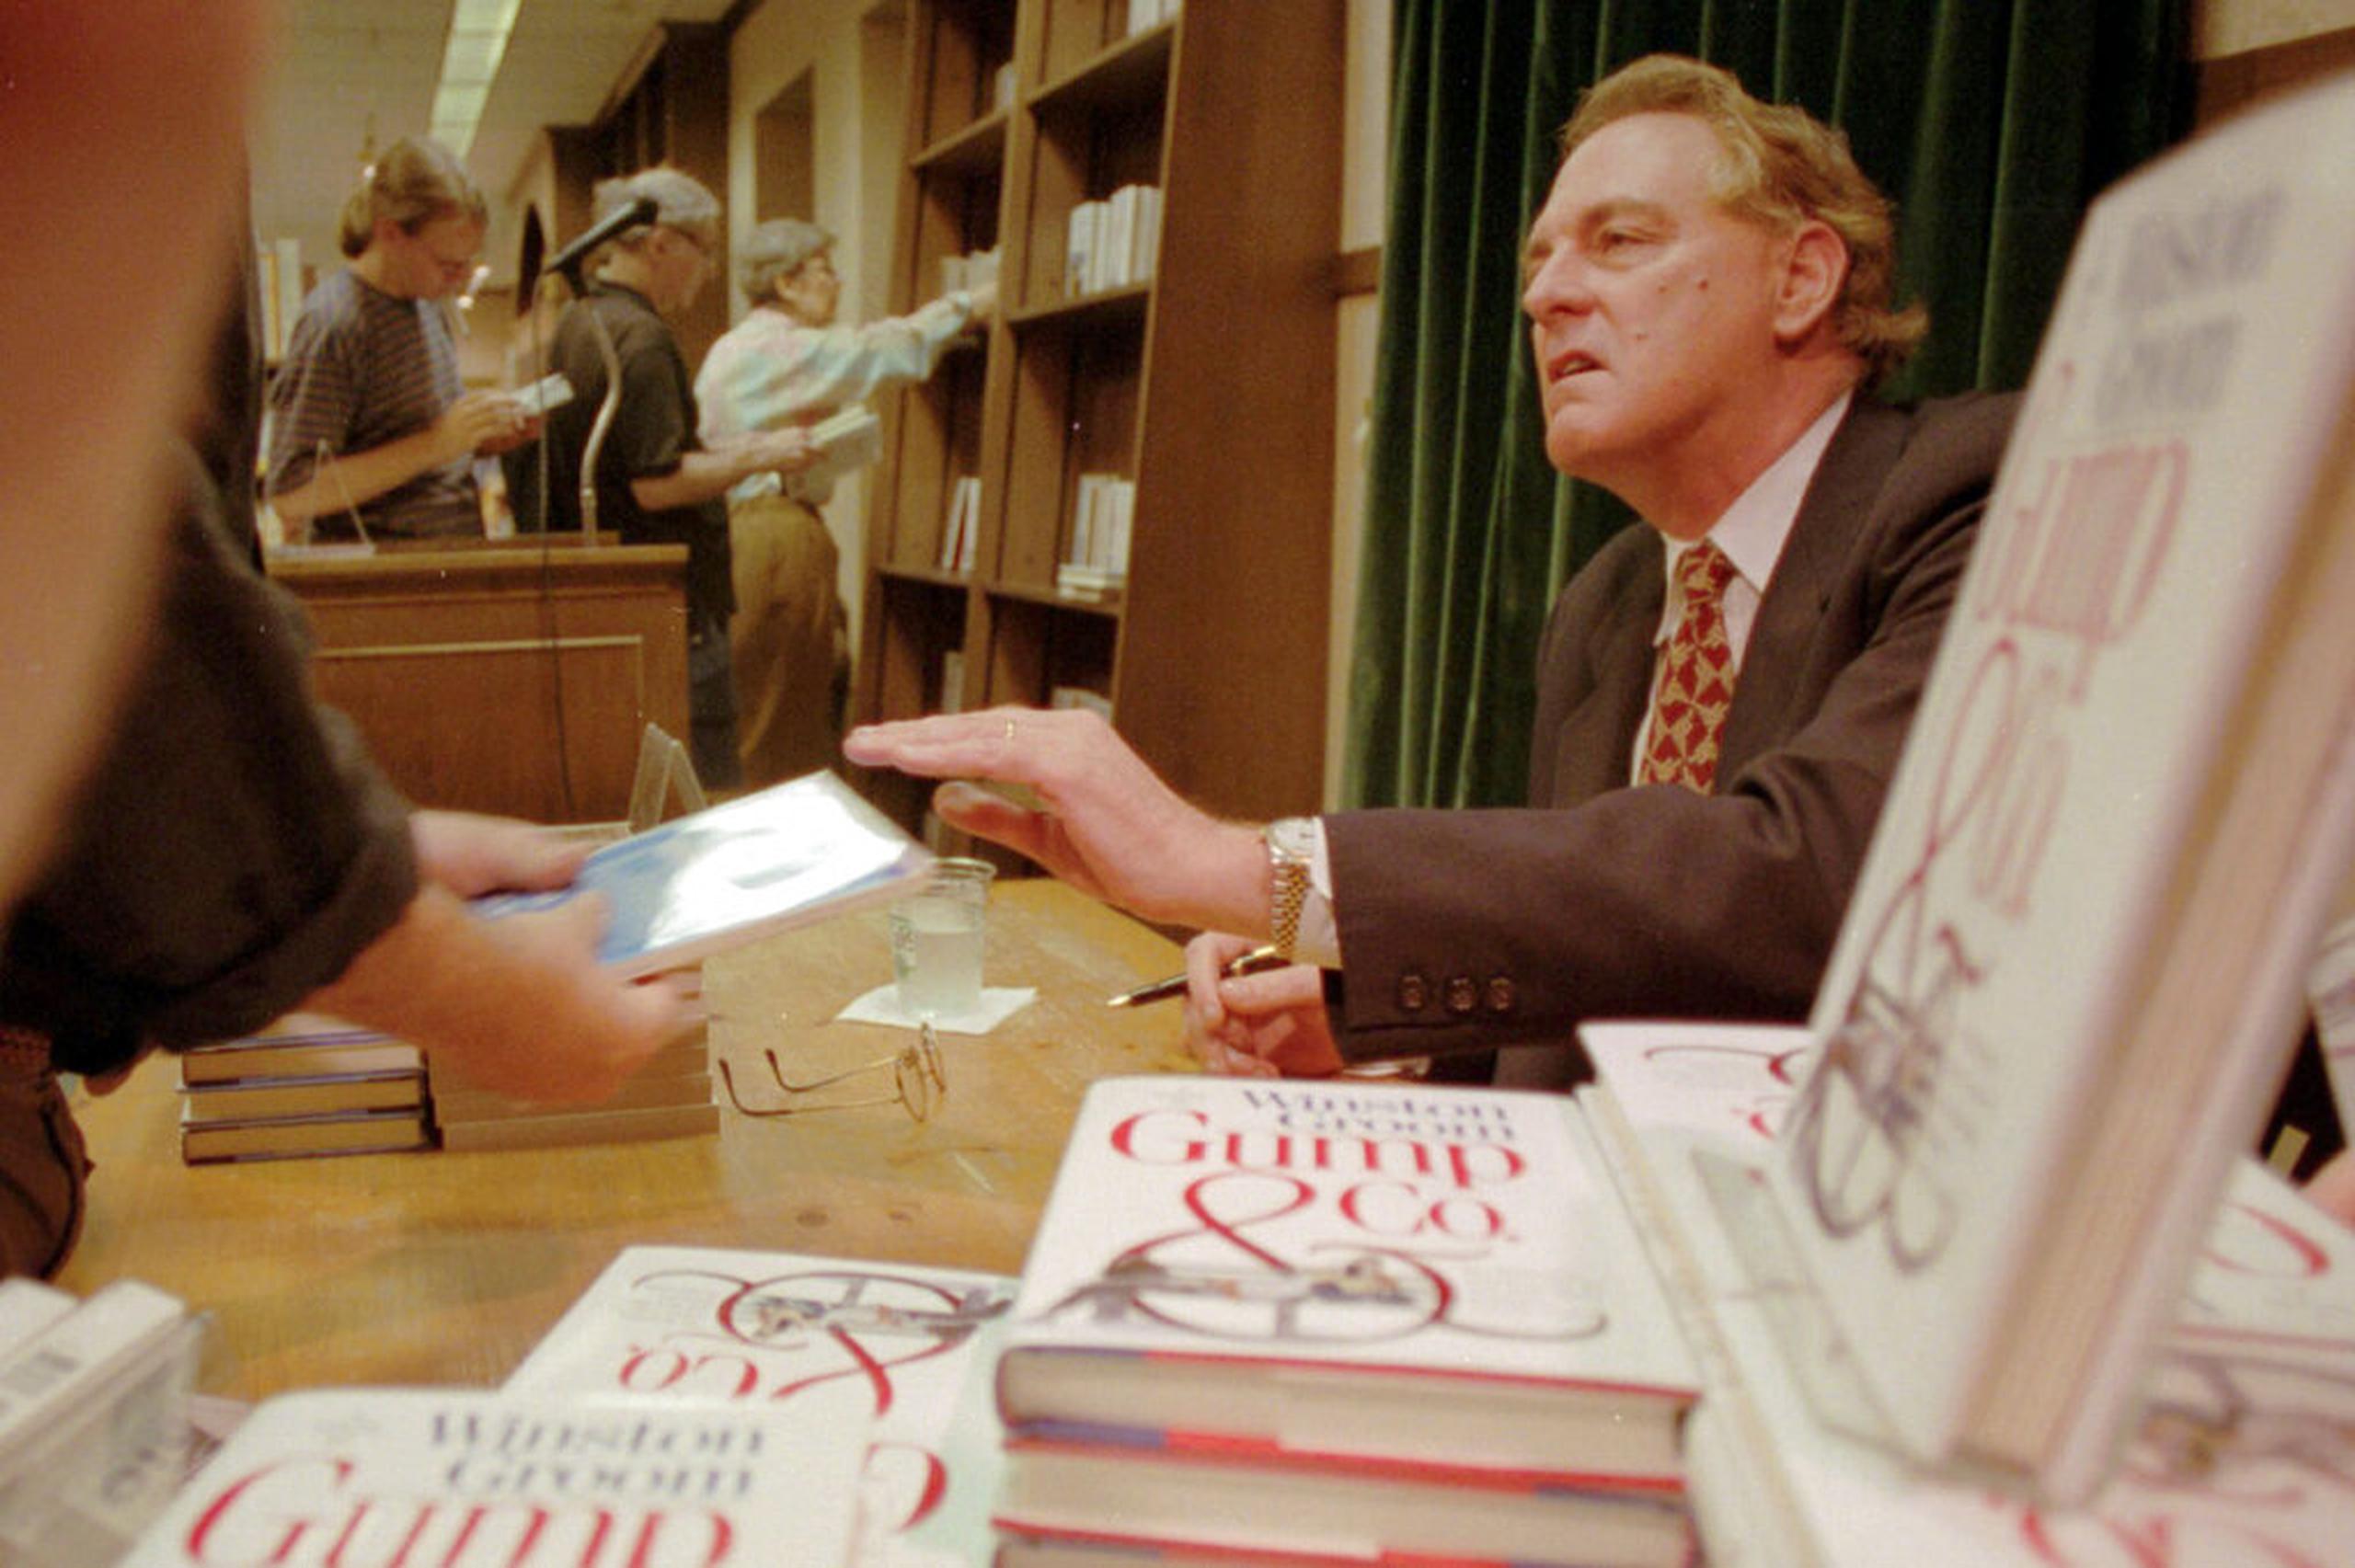 Winston Groom firma copias de la secuela "Gump & Co." en una librería de la ciudad de Nueva York el 21 de agosto de 1995.